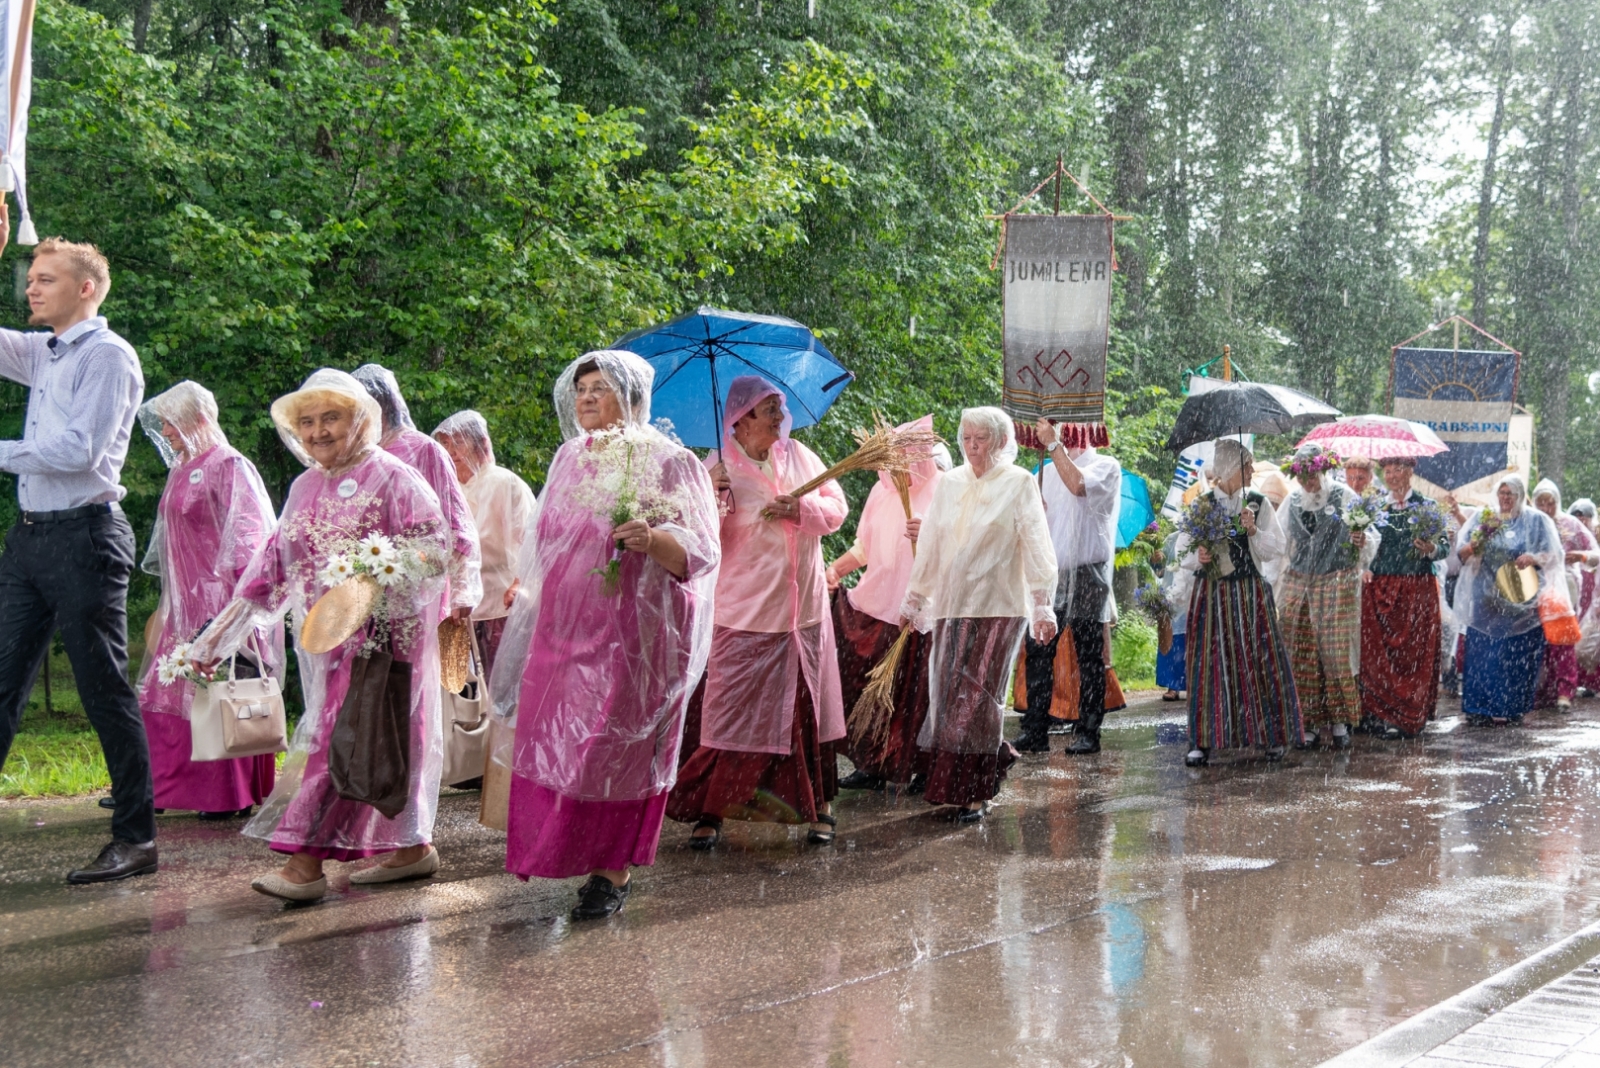 XIX Latgales novada senioru dziesmu un deju svētku festivāls “Ūgu maize”